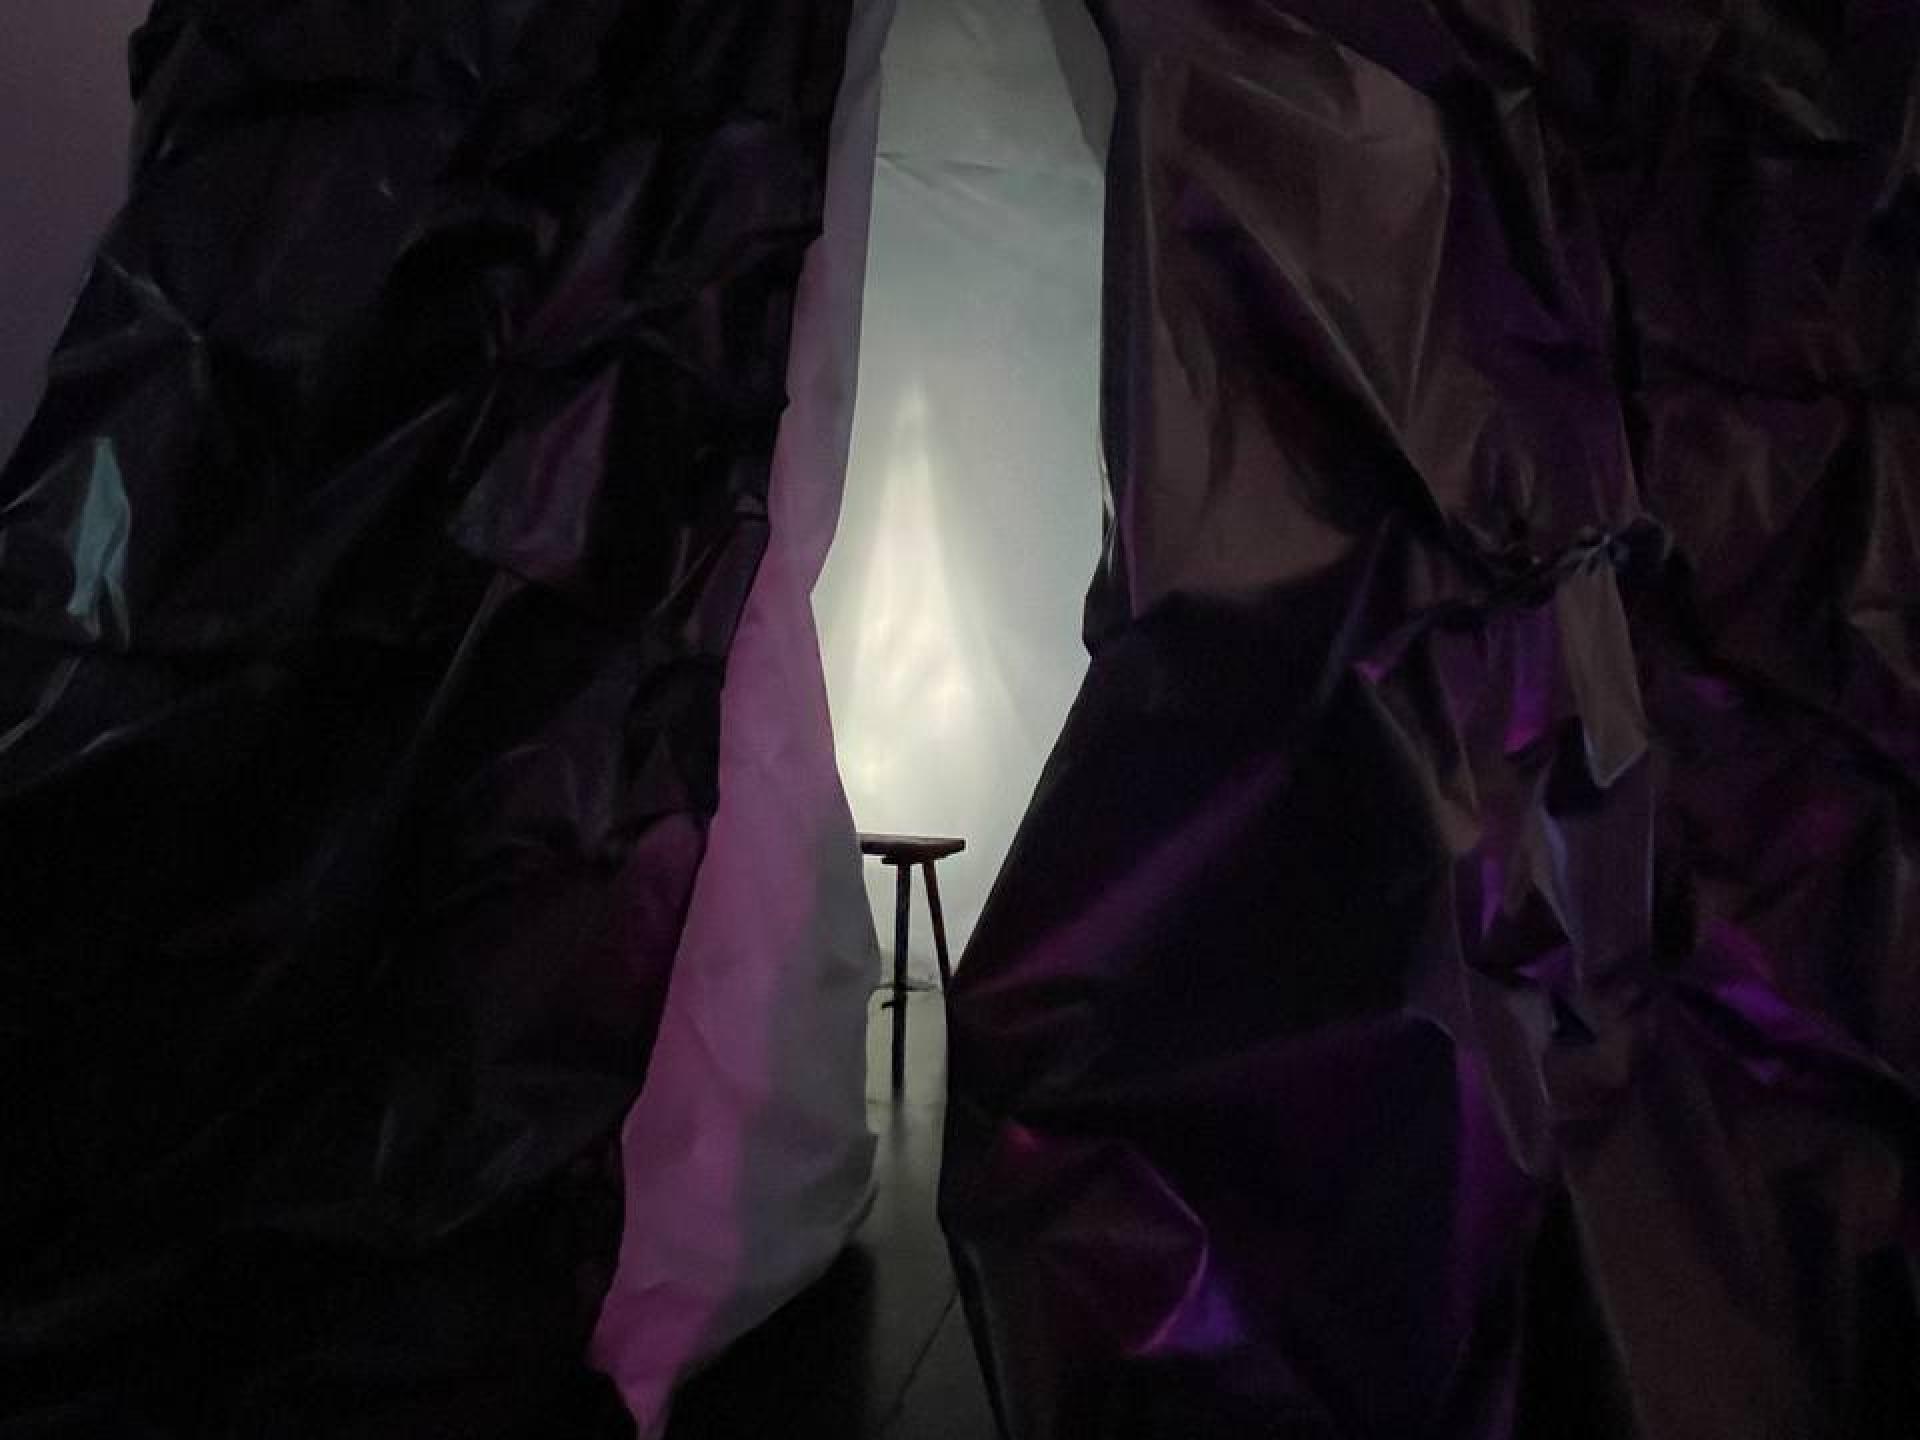 Zu sehen ist das Ende und zwei Beine einer hölzernen Sitzbank in einem Raum mit weissem Licht, umgeben von dunklen, lilafarbenen Vorhängen aus Papier oder Stoff.